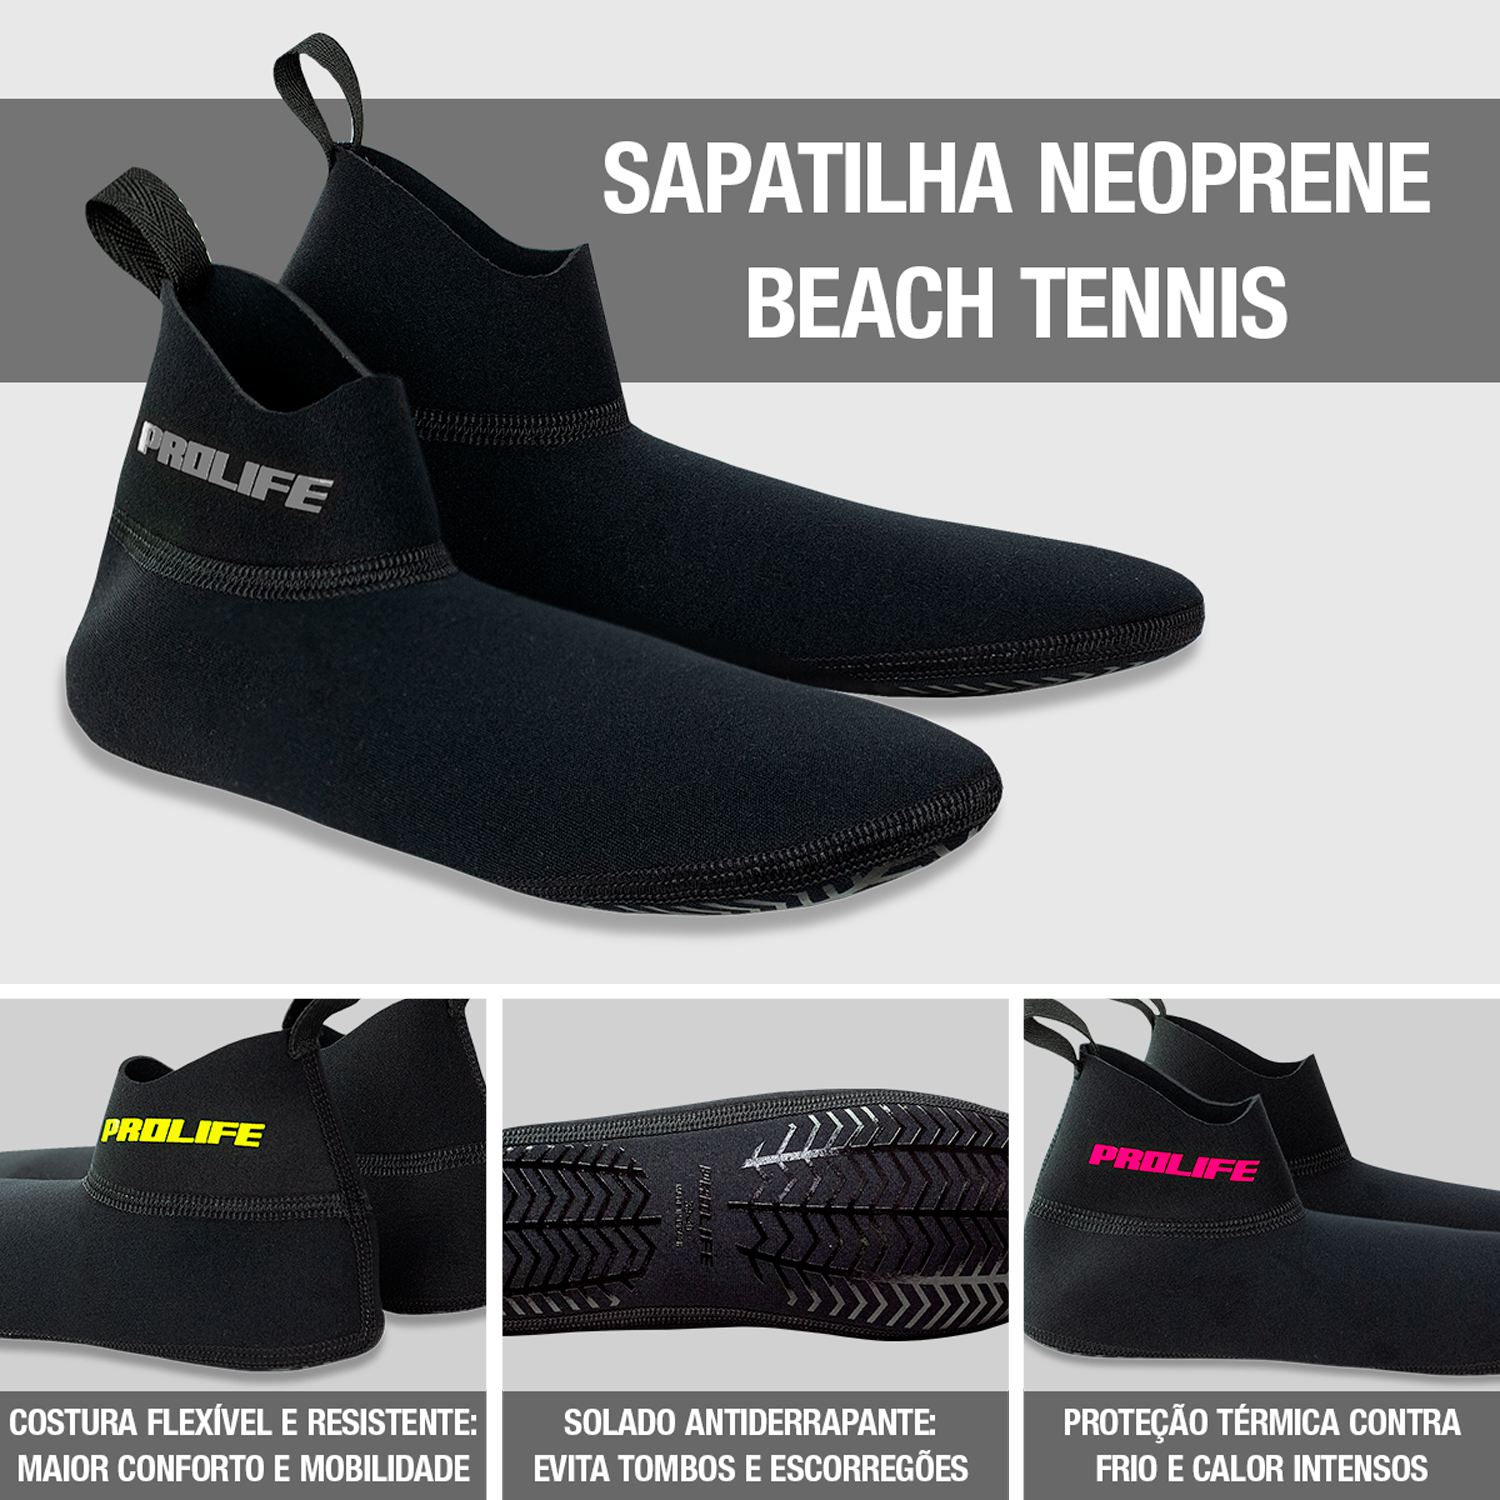 Sapatilha Neoprene Beach Tennis